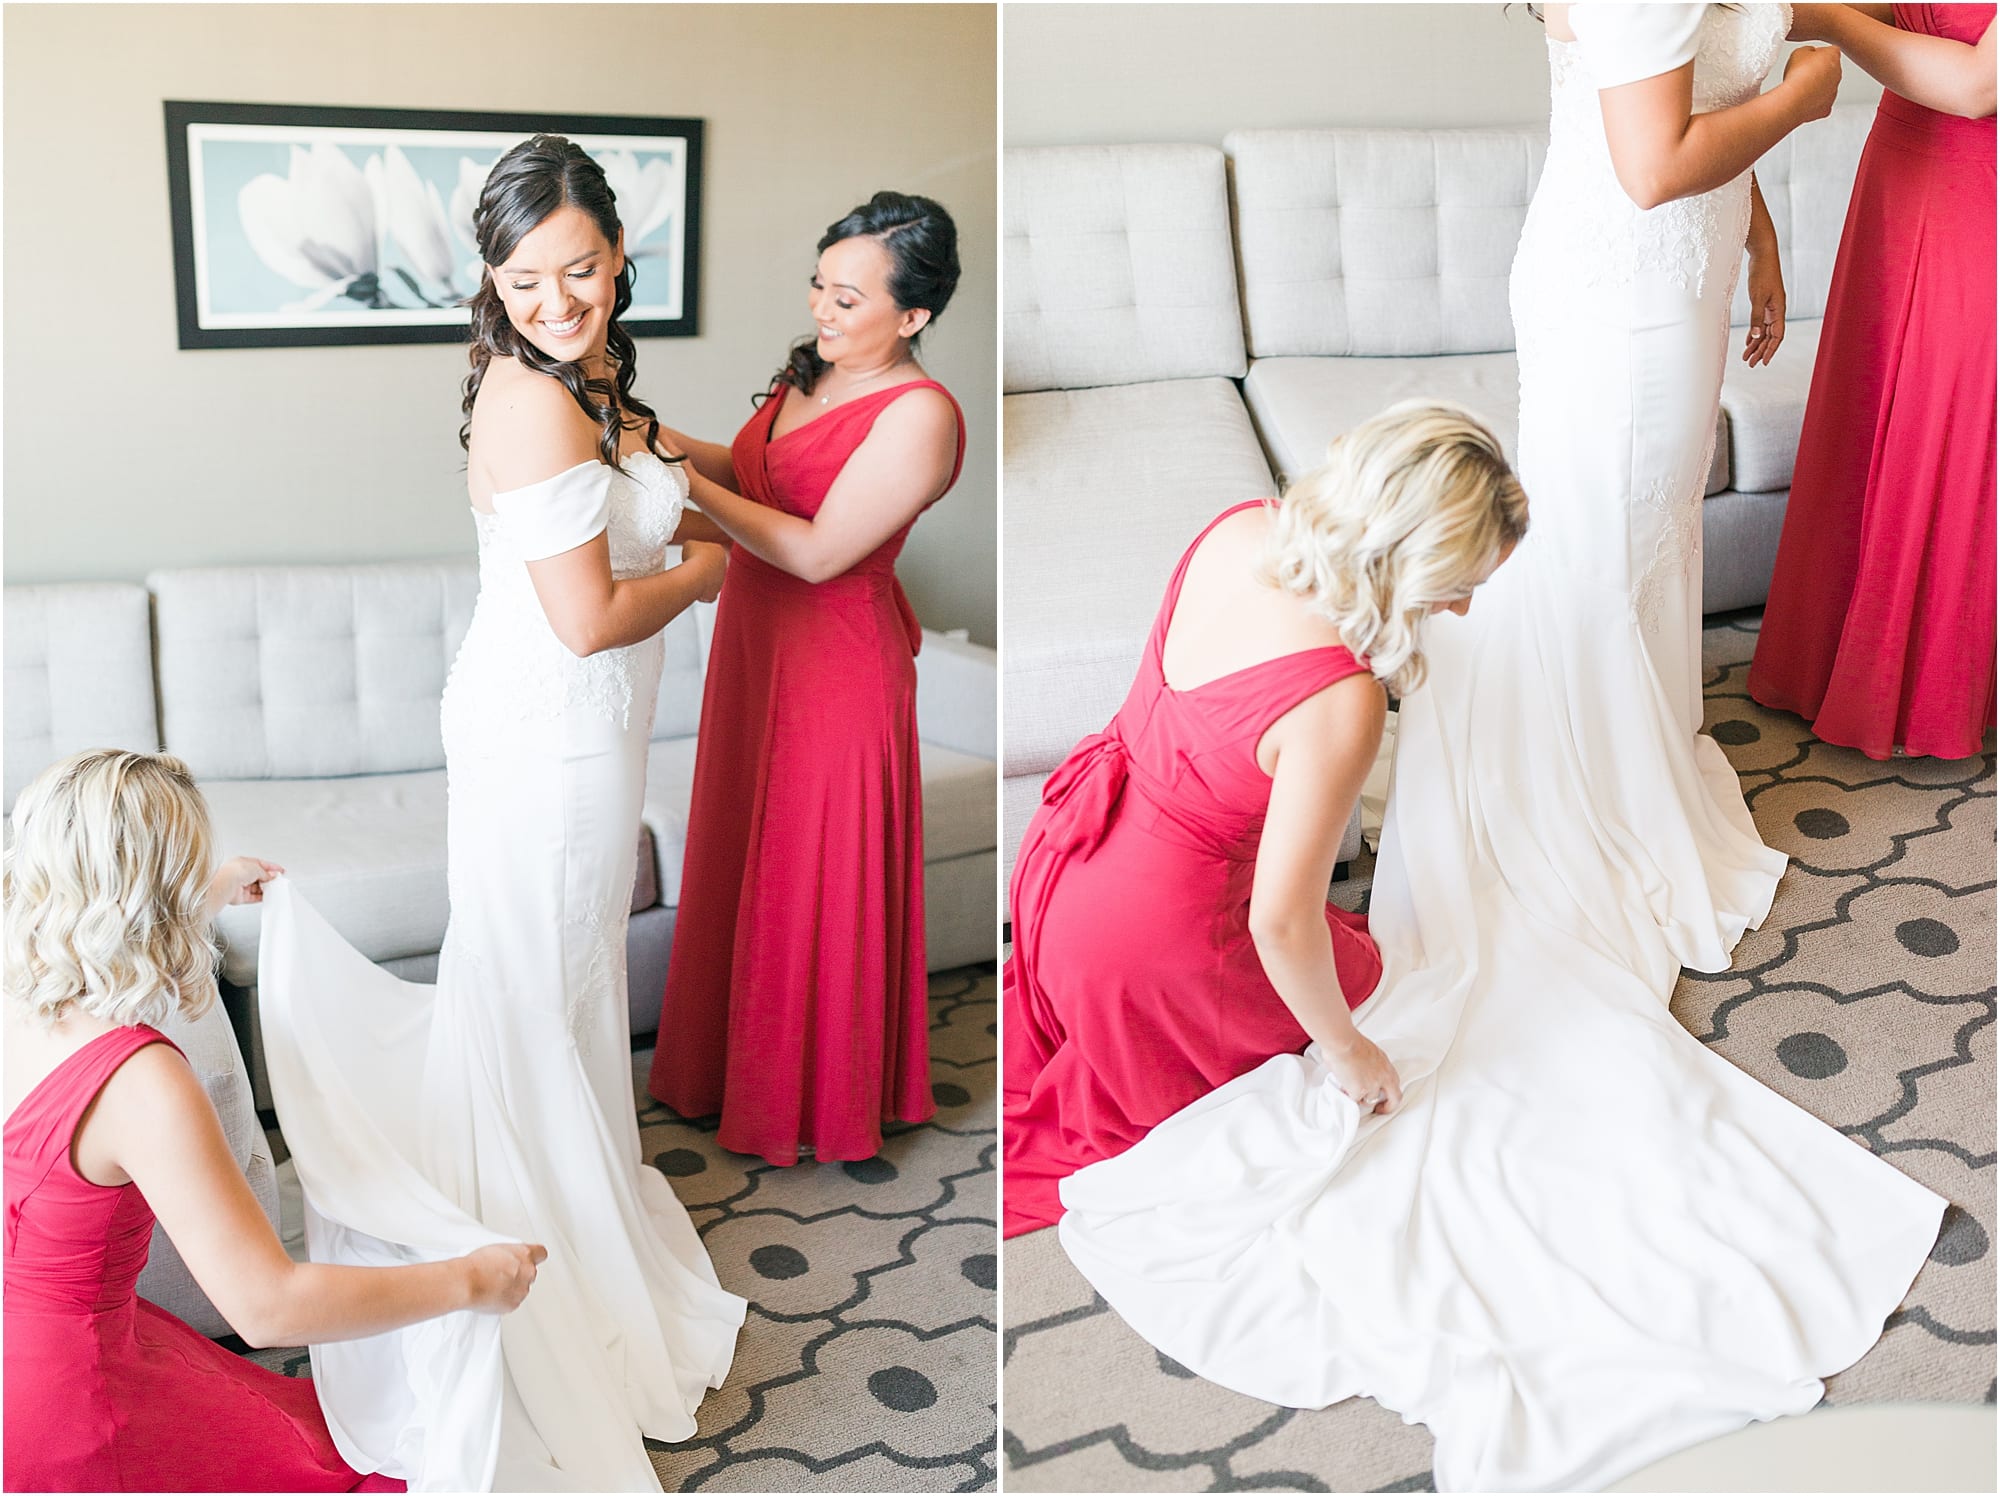 Getting ready photos | Elegant wedding | Spanish Mission | San Gabriel Mission Wedding